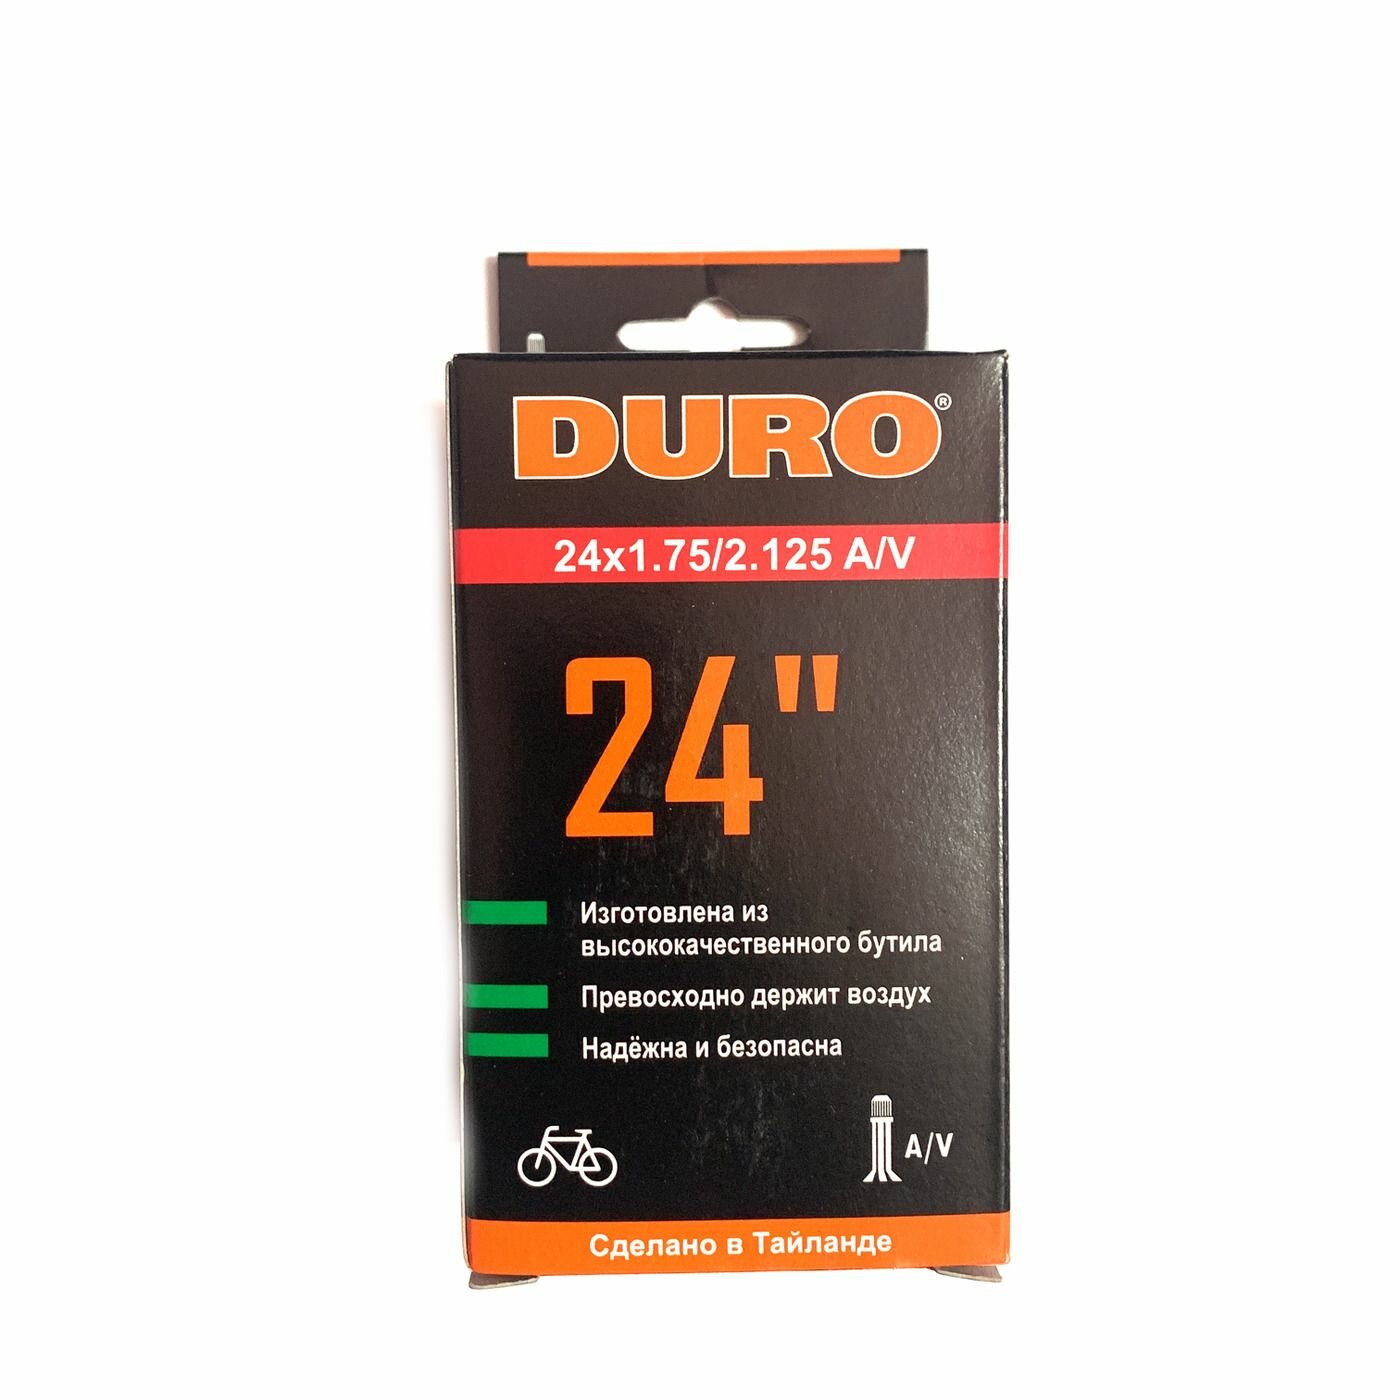 Велокамера DURO 24" (В коробке) 24х2.125 A/V